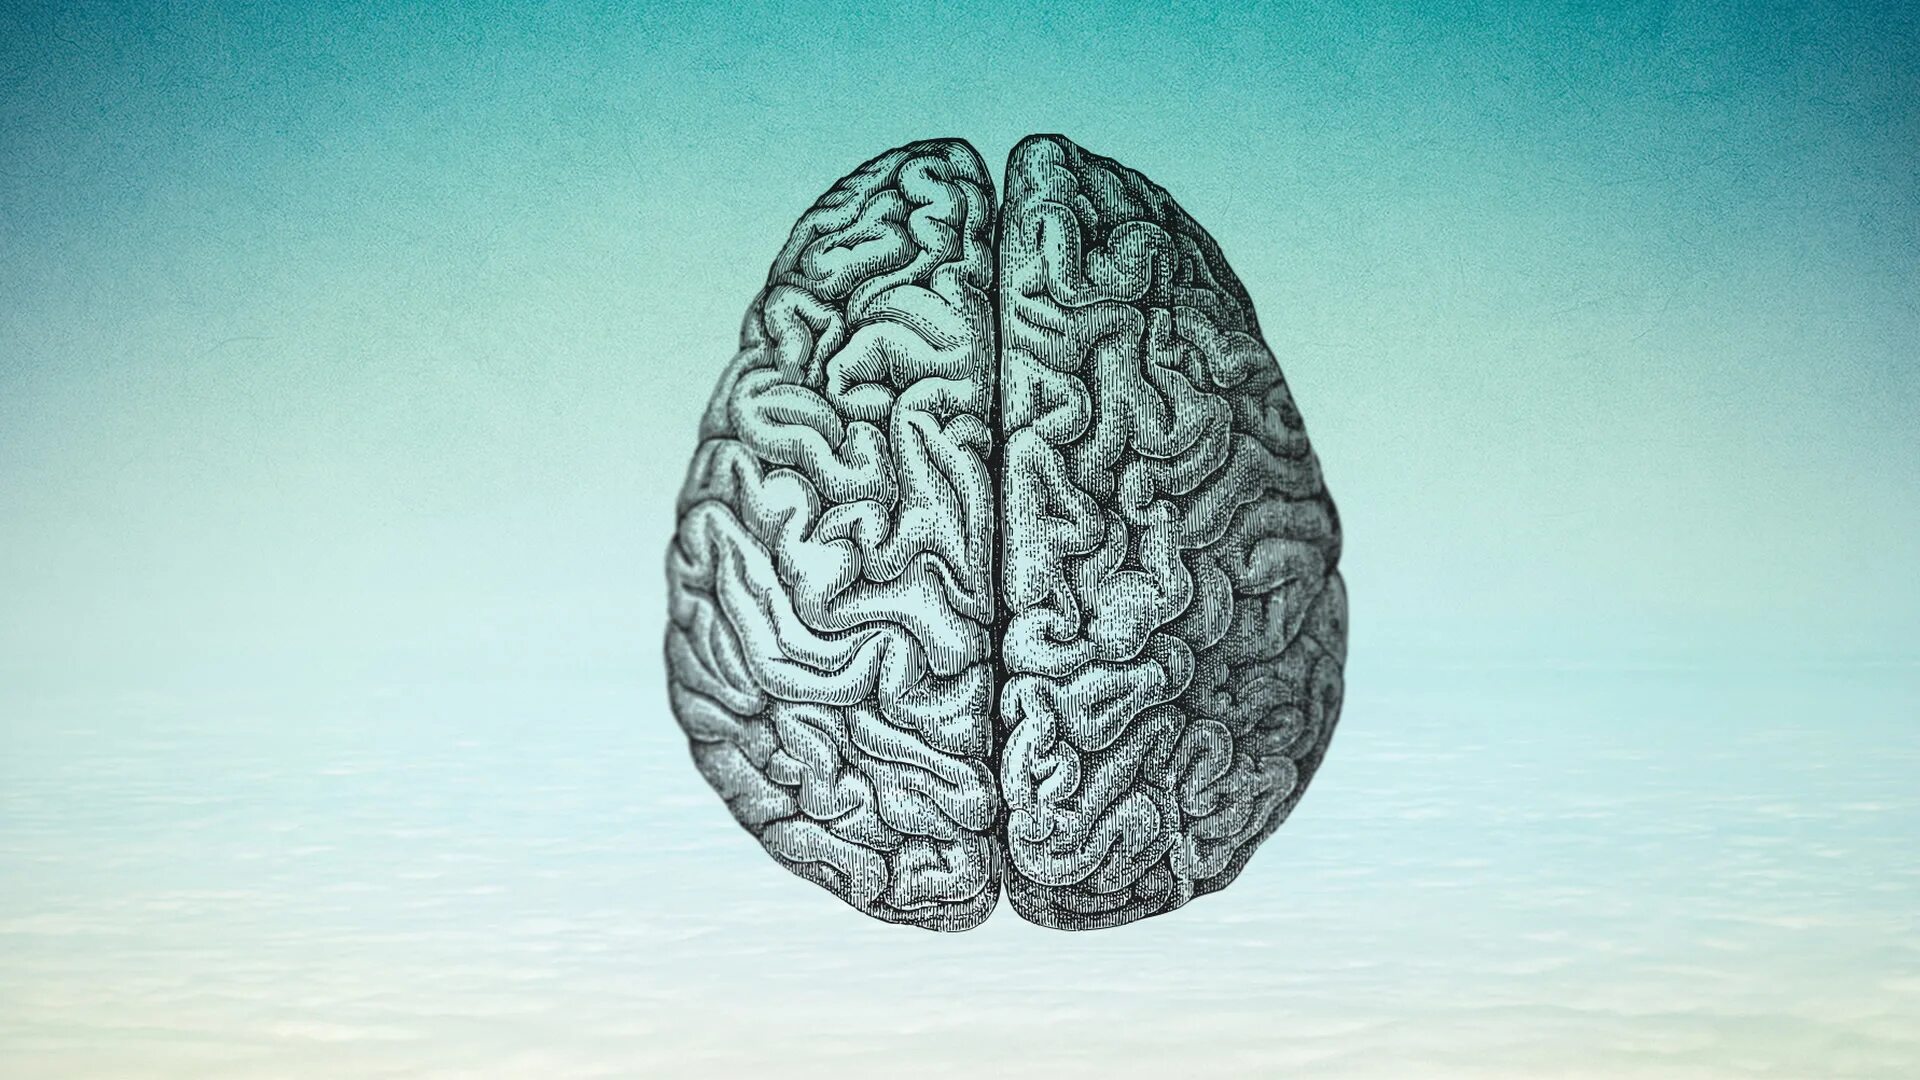 Elder brain. Старение головного мозга. Cerebro скрины. Проект #мозг45.